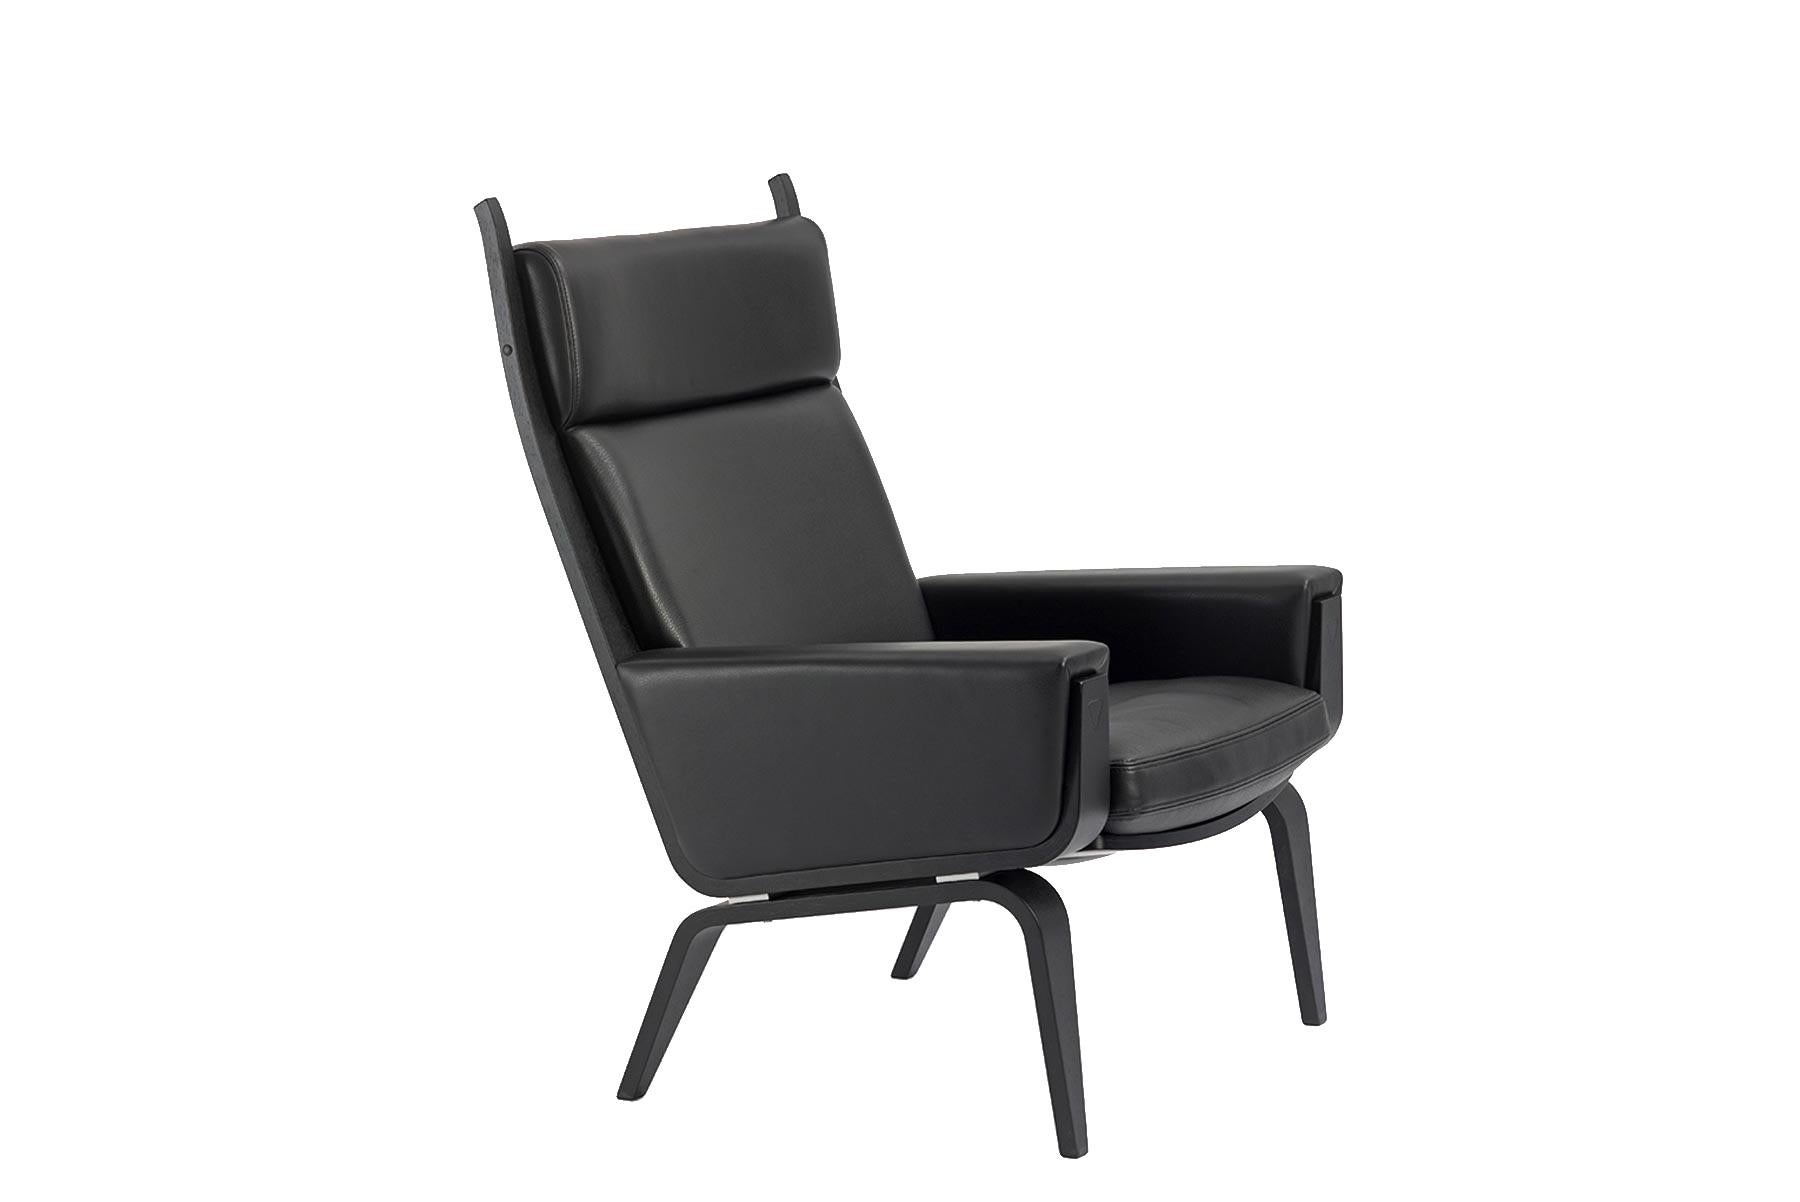 Der 1967 von Hans Wegner entworfene Sessel 501A mit hoher Rückenlehne vereint zeitlose Eleganz und Komfort. Gefertigt aus laminierter, gebogener Eiche und in der GETAMA-Fabrik in Gedsted, Dänemark, von erfahrenen Tischlern nach traditionellen